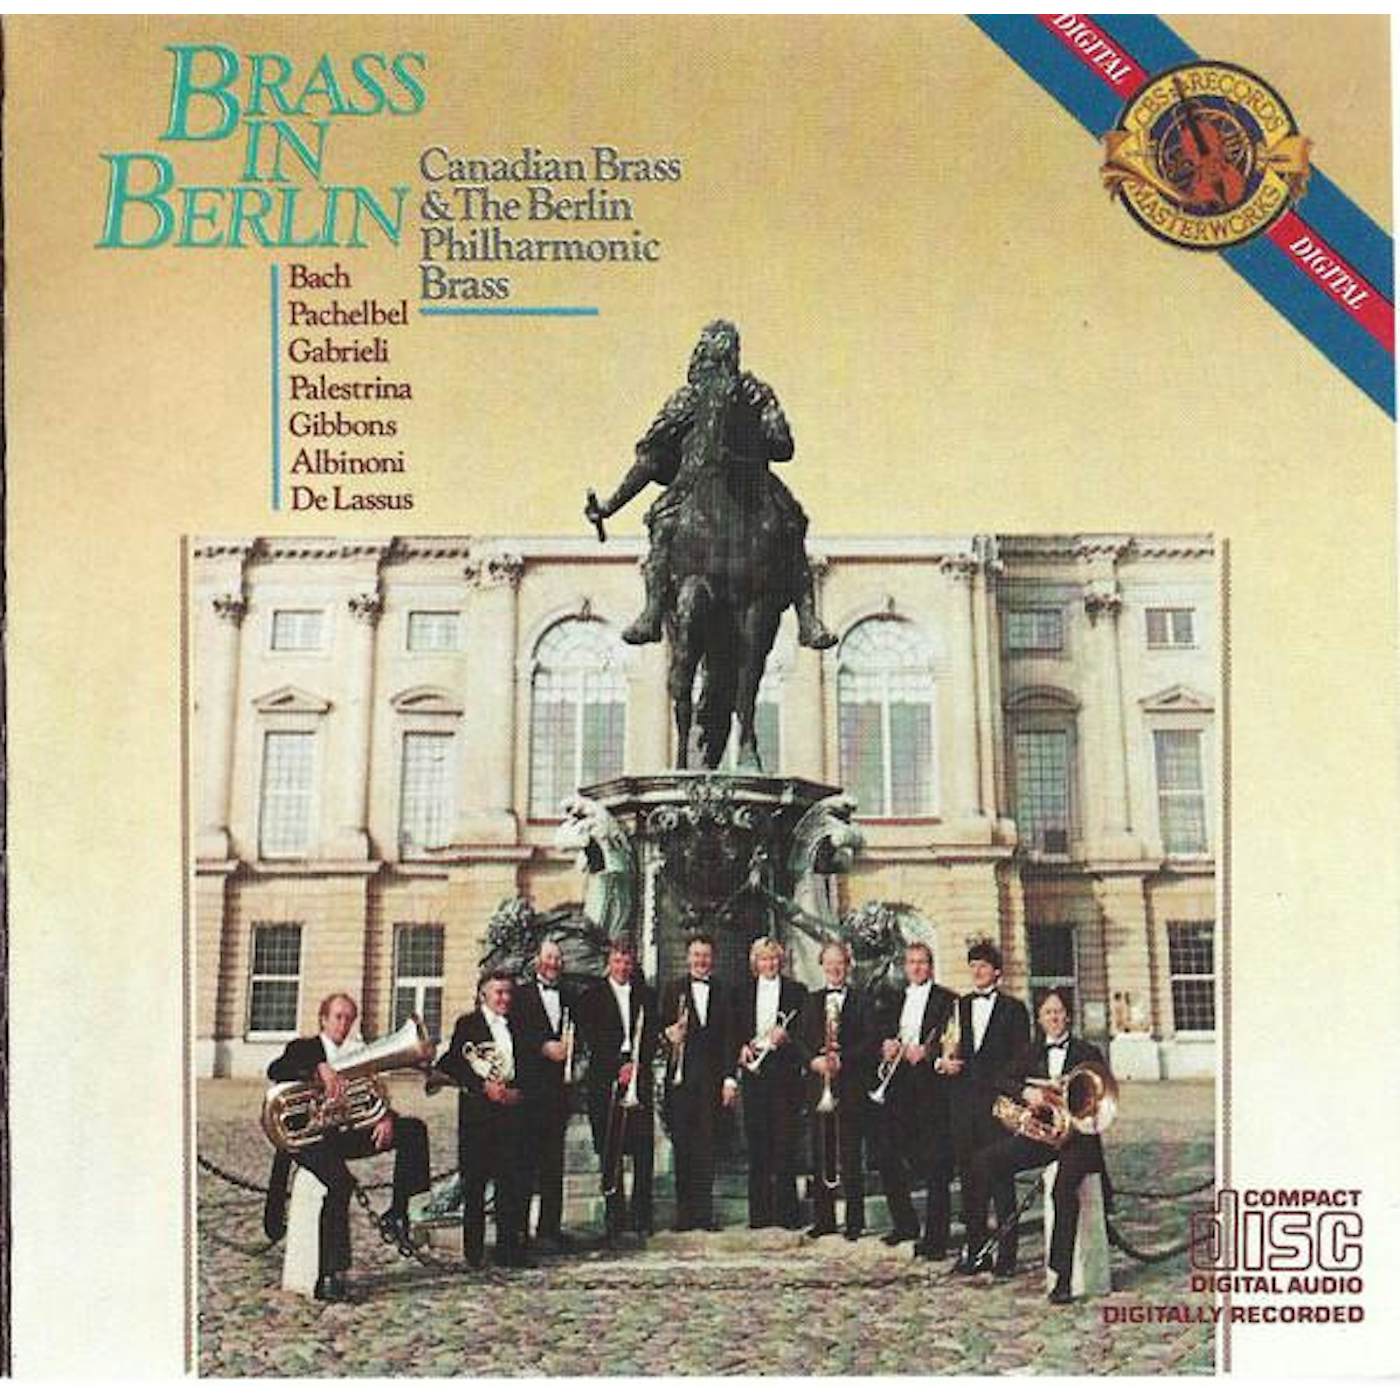 Canadian Brass BRASS IN BERLIN CD